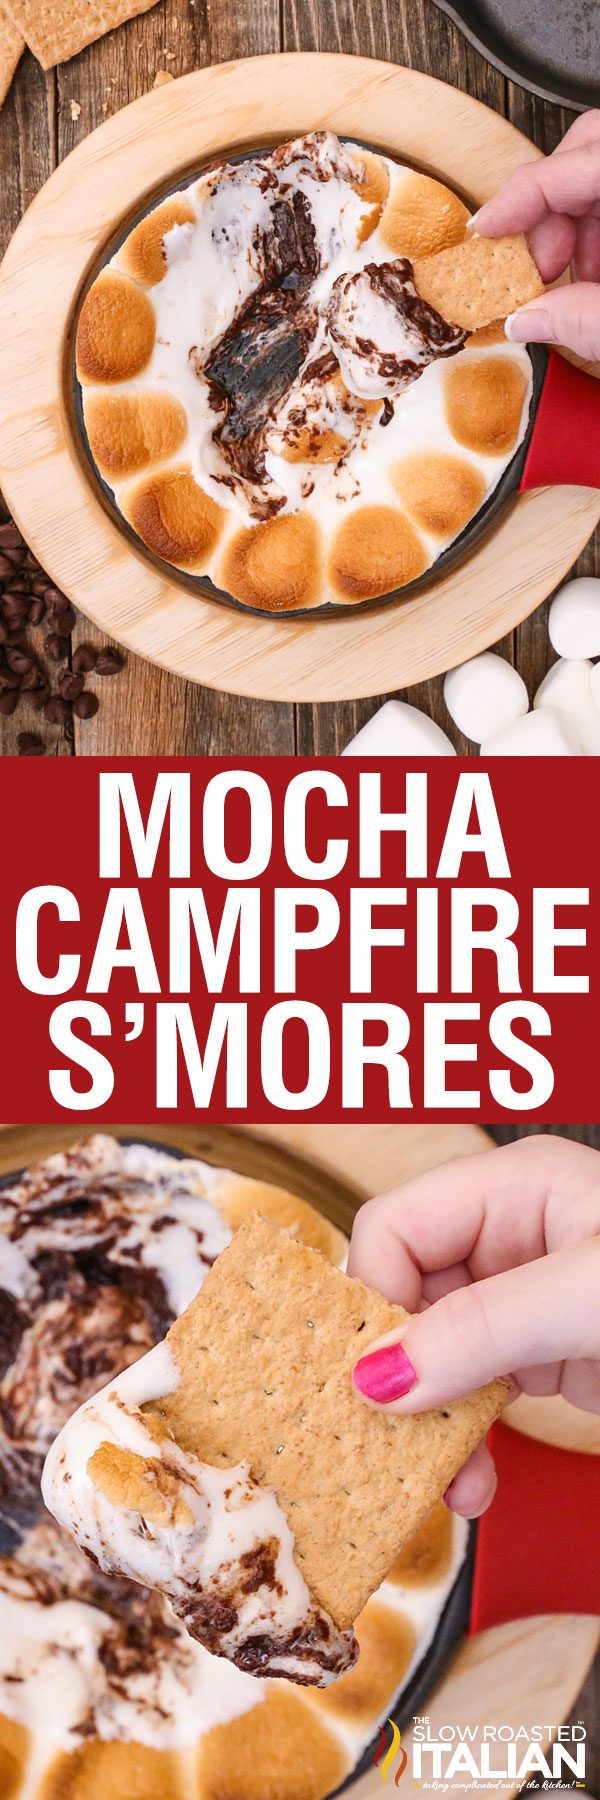 mocha-campfire-smores-pin-4722718